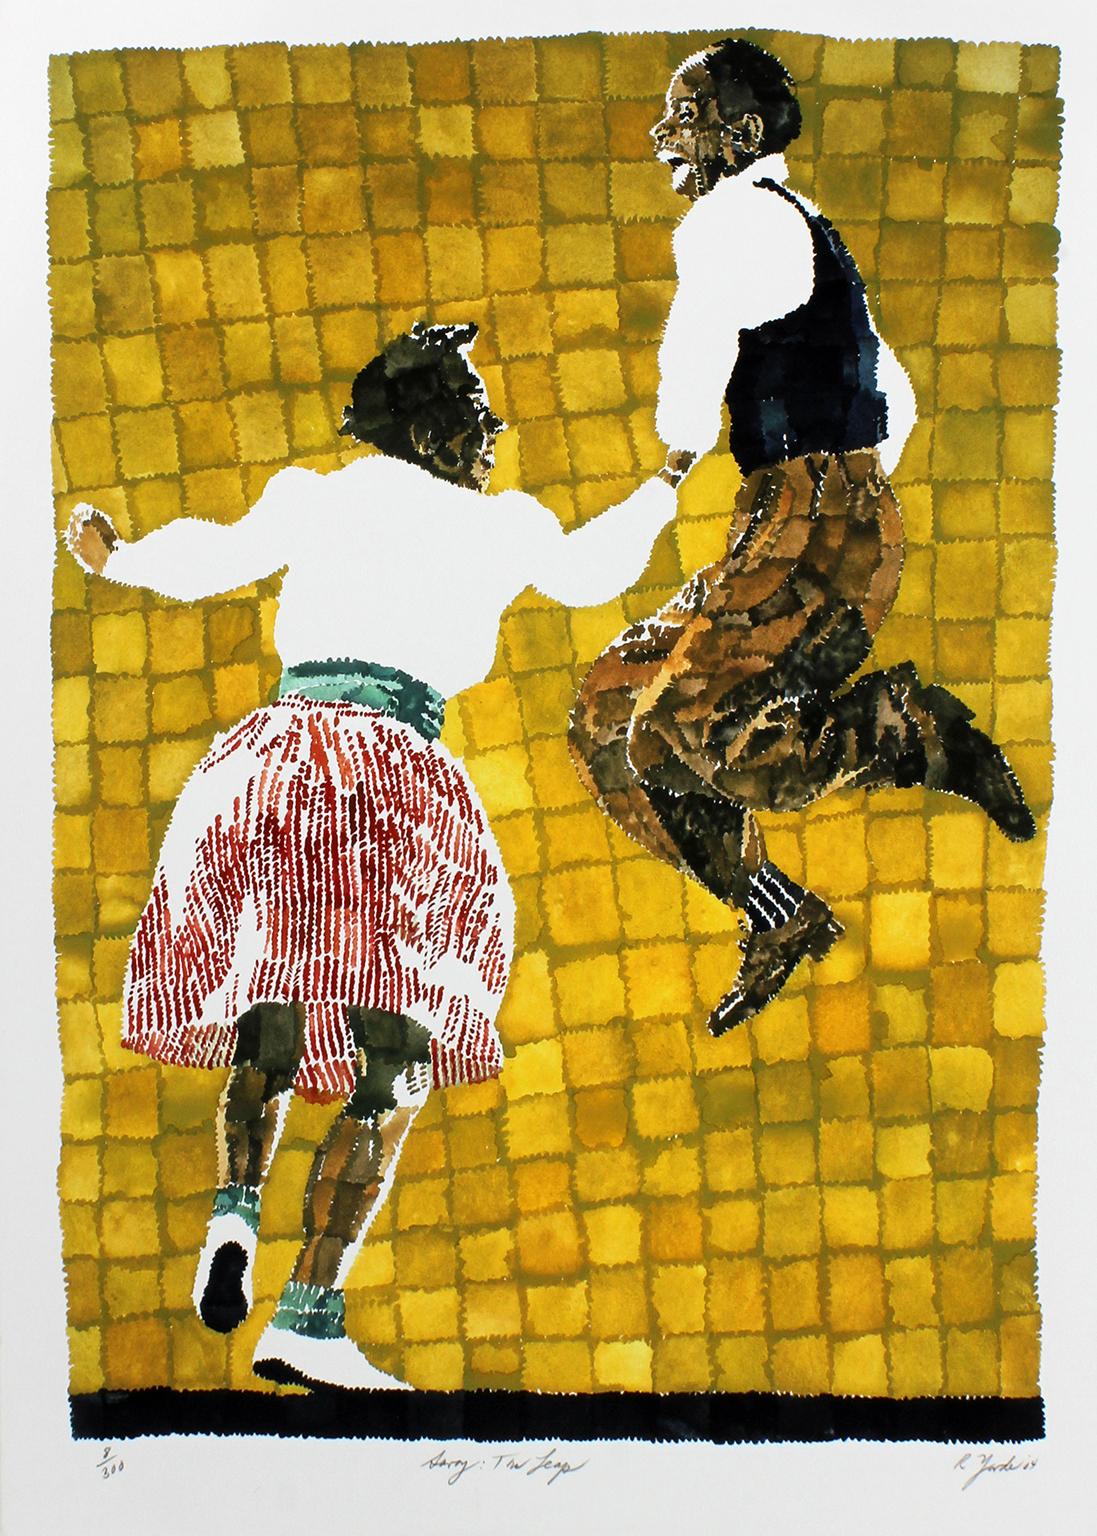 "Savoy : The Leap" giclée en édition limitée sur papier d'art d'un couple de danseurs par l'artiste afro-américain Richard Yarde. Fait partie de la série "Savoy Ballroom" de Yarde. Numéroté à la main 8/300 dans le coin inférieur gauche, titré "Savoy